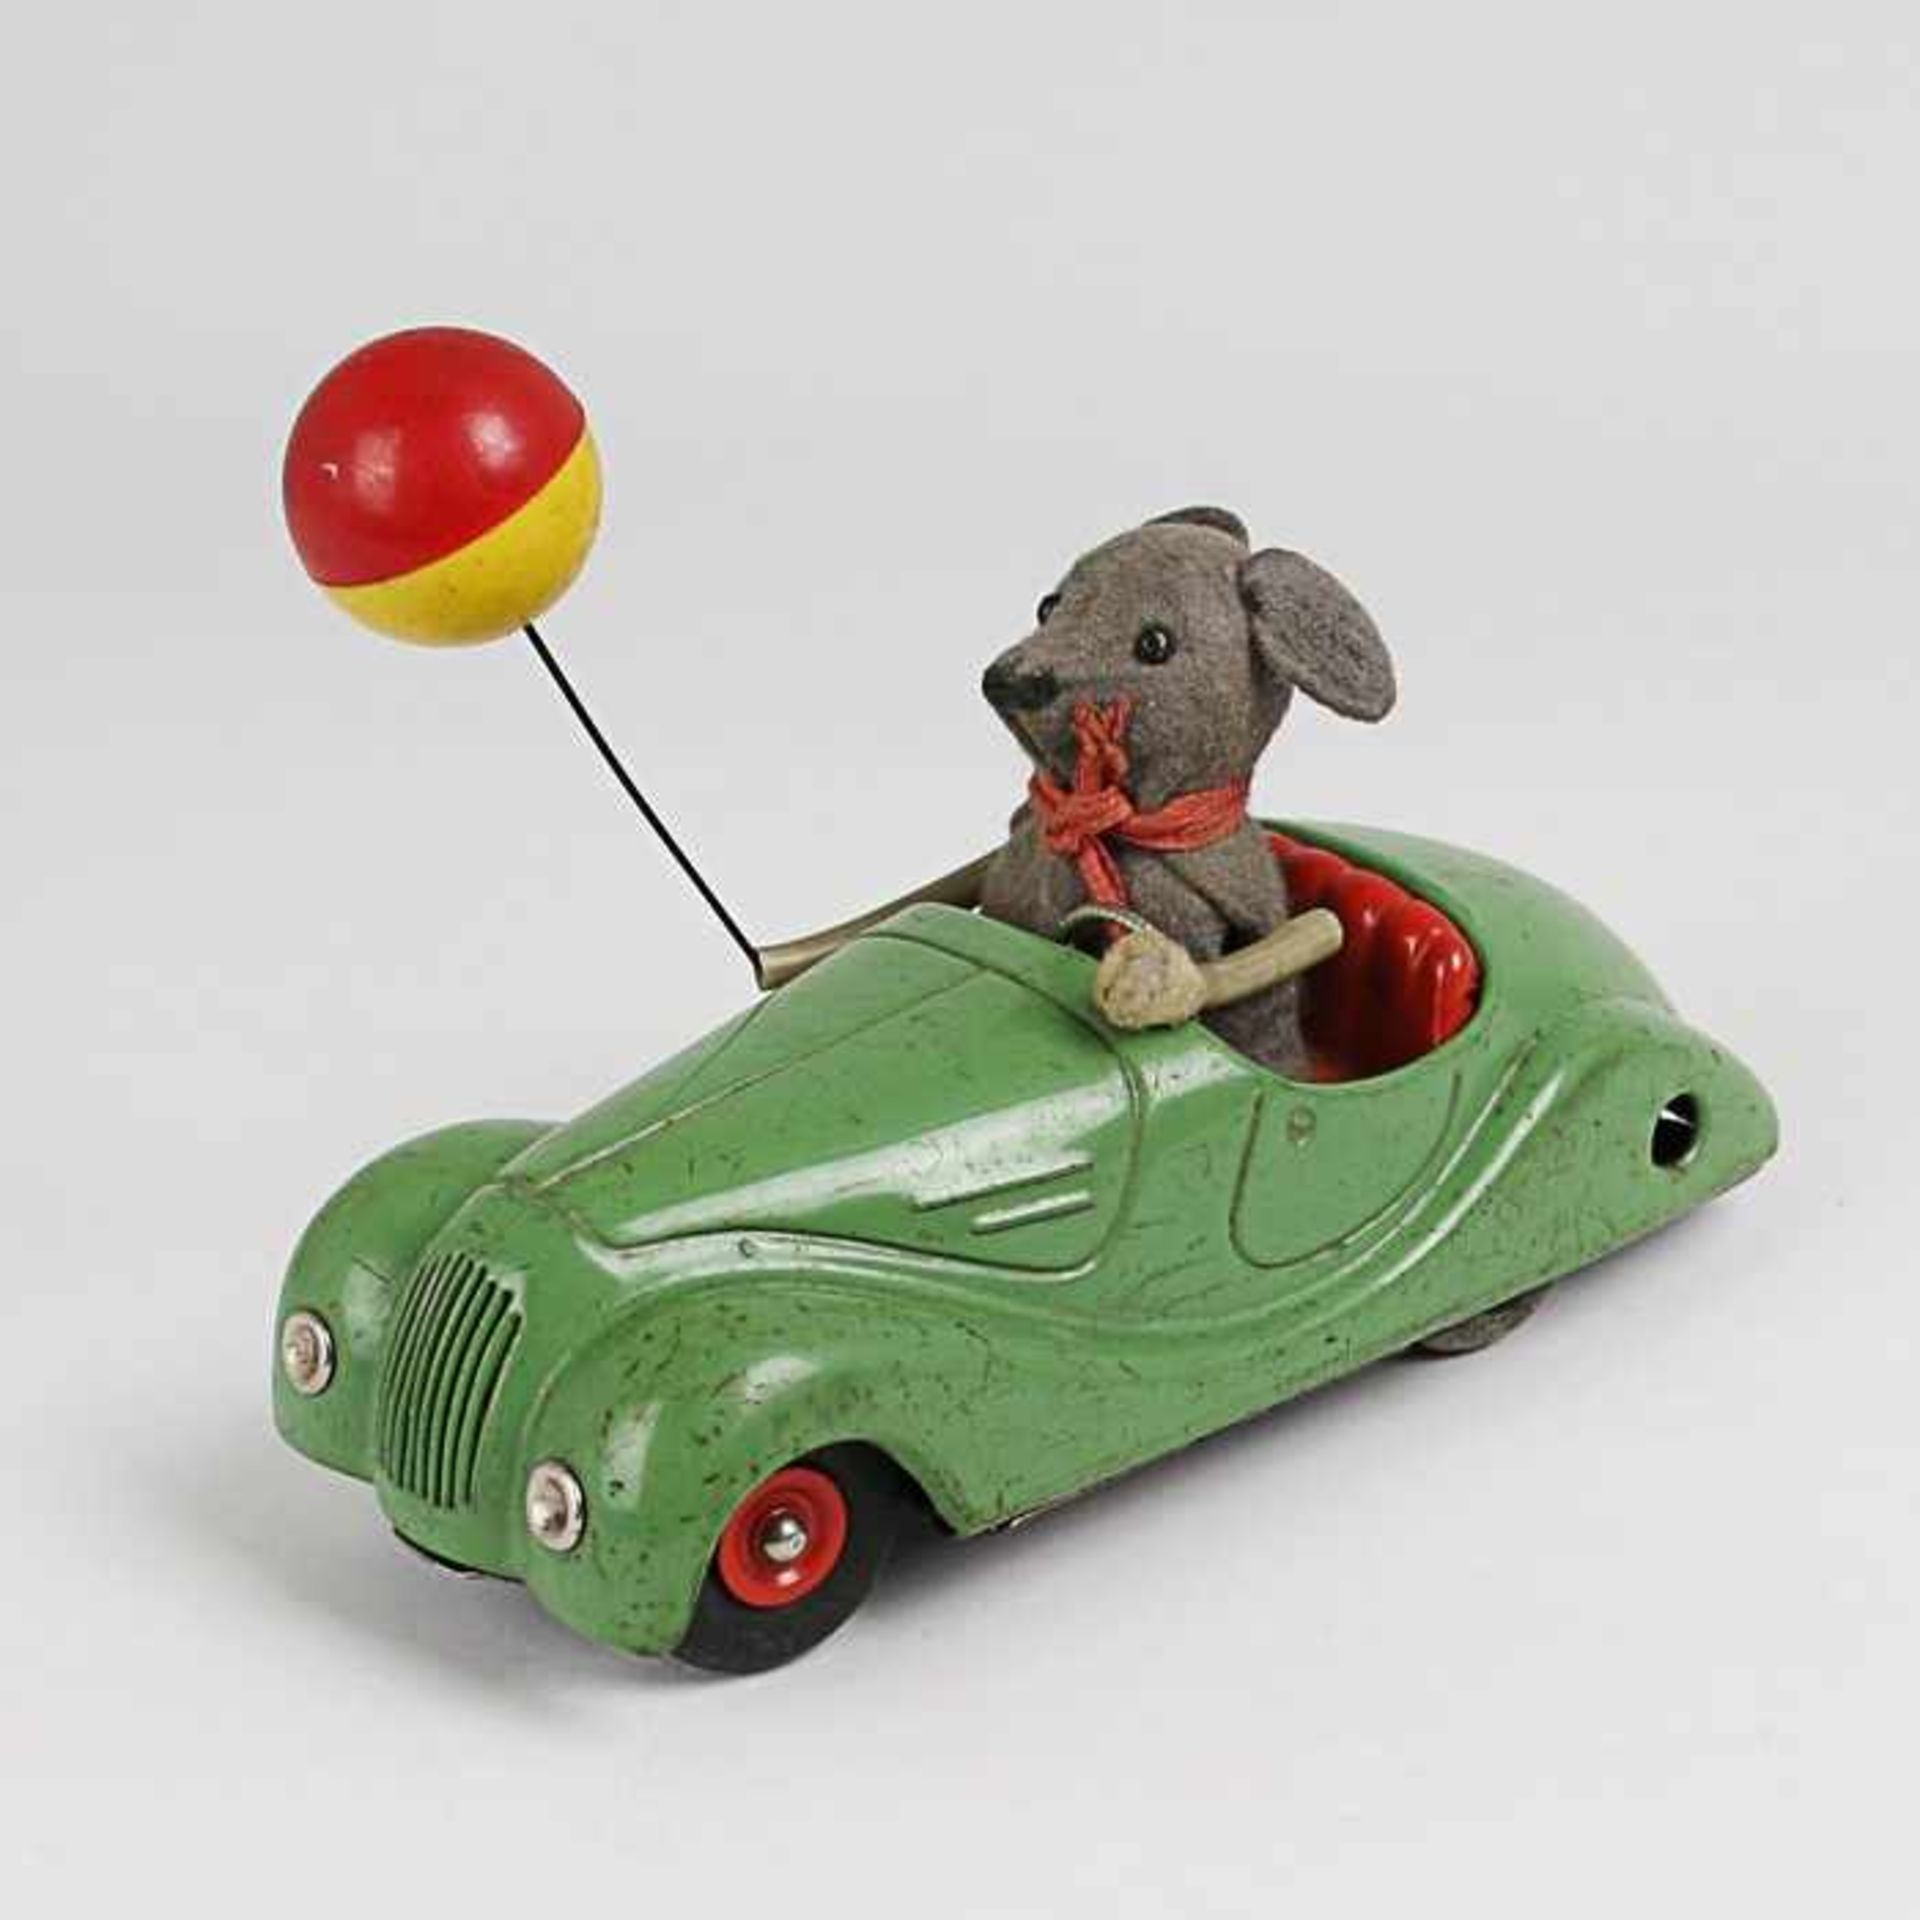 Schuco - BlechspielzeugSonny Maus 2005, Blech, grün, Maus m. beweglichen Armen u. Luftballon, 1 Hand